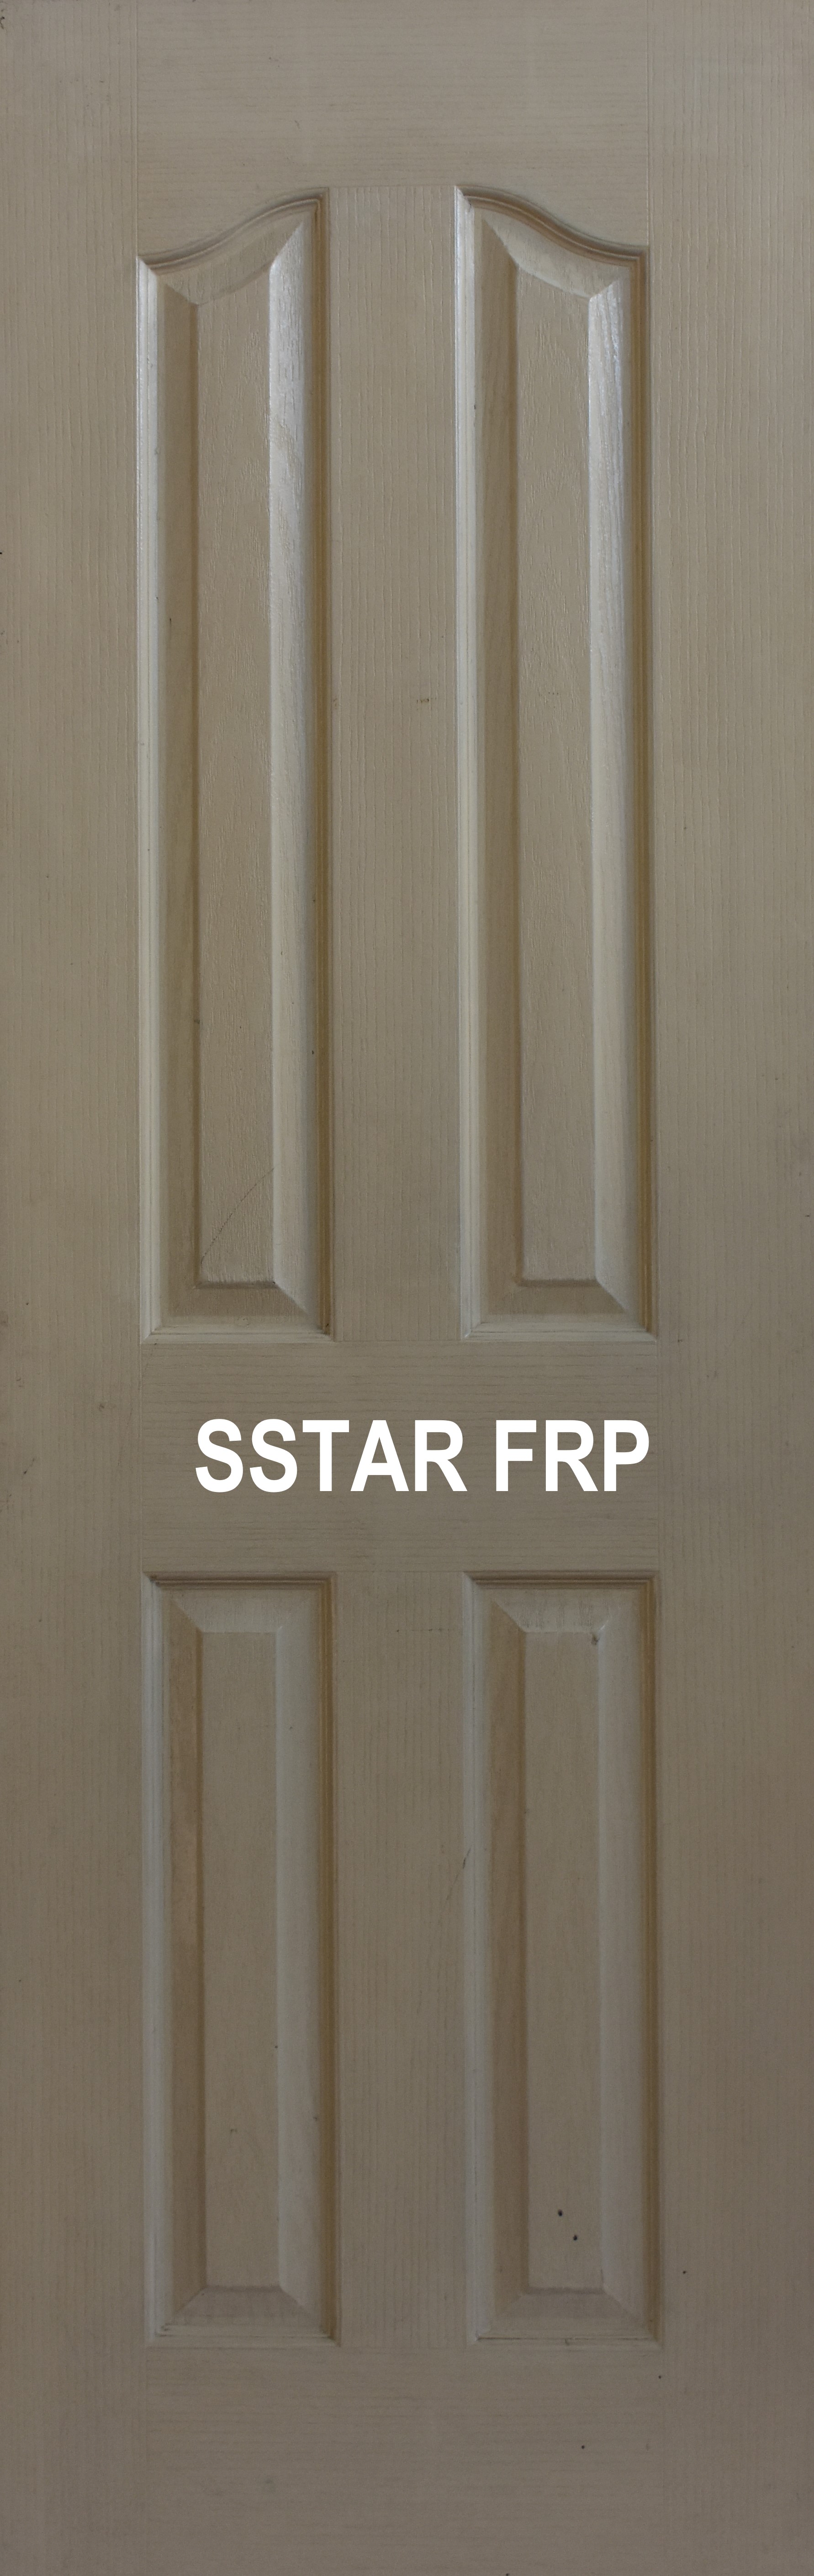 Frp Doors Four Panel Door (4PS-001)